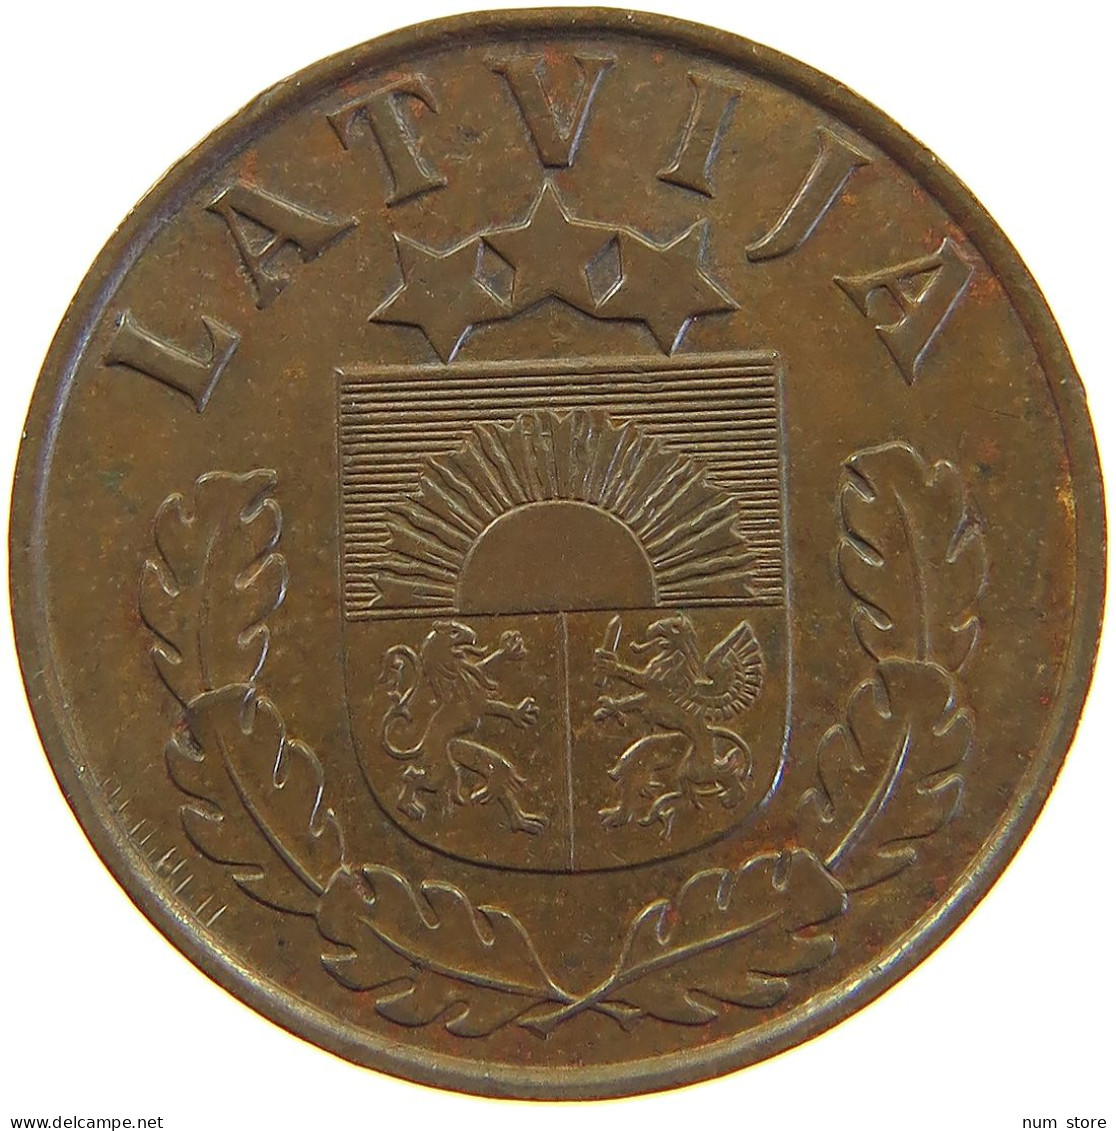 LATVIA 2 SANTIMI 1939  #c050 0259 - Latvia